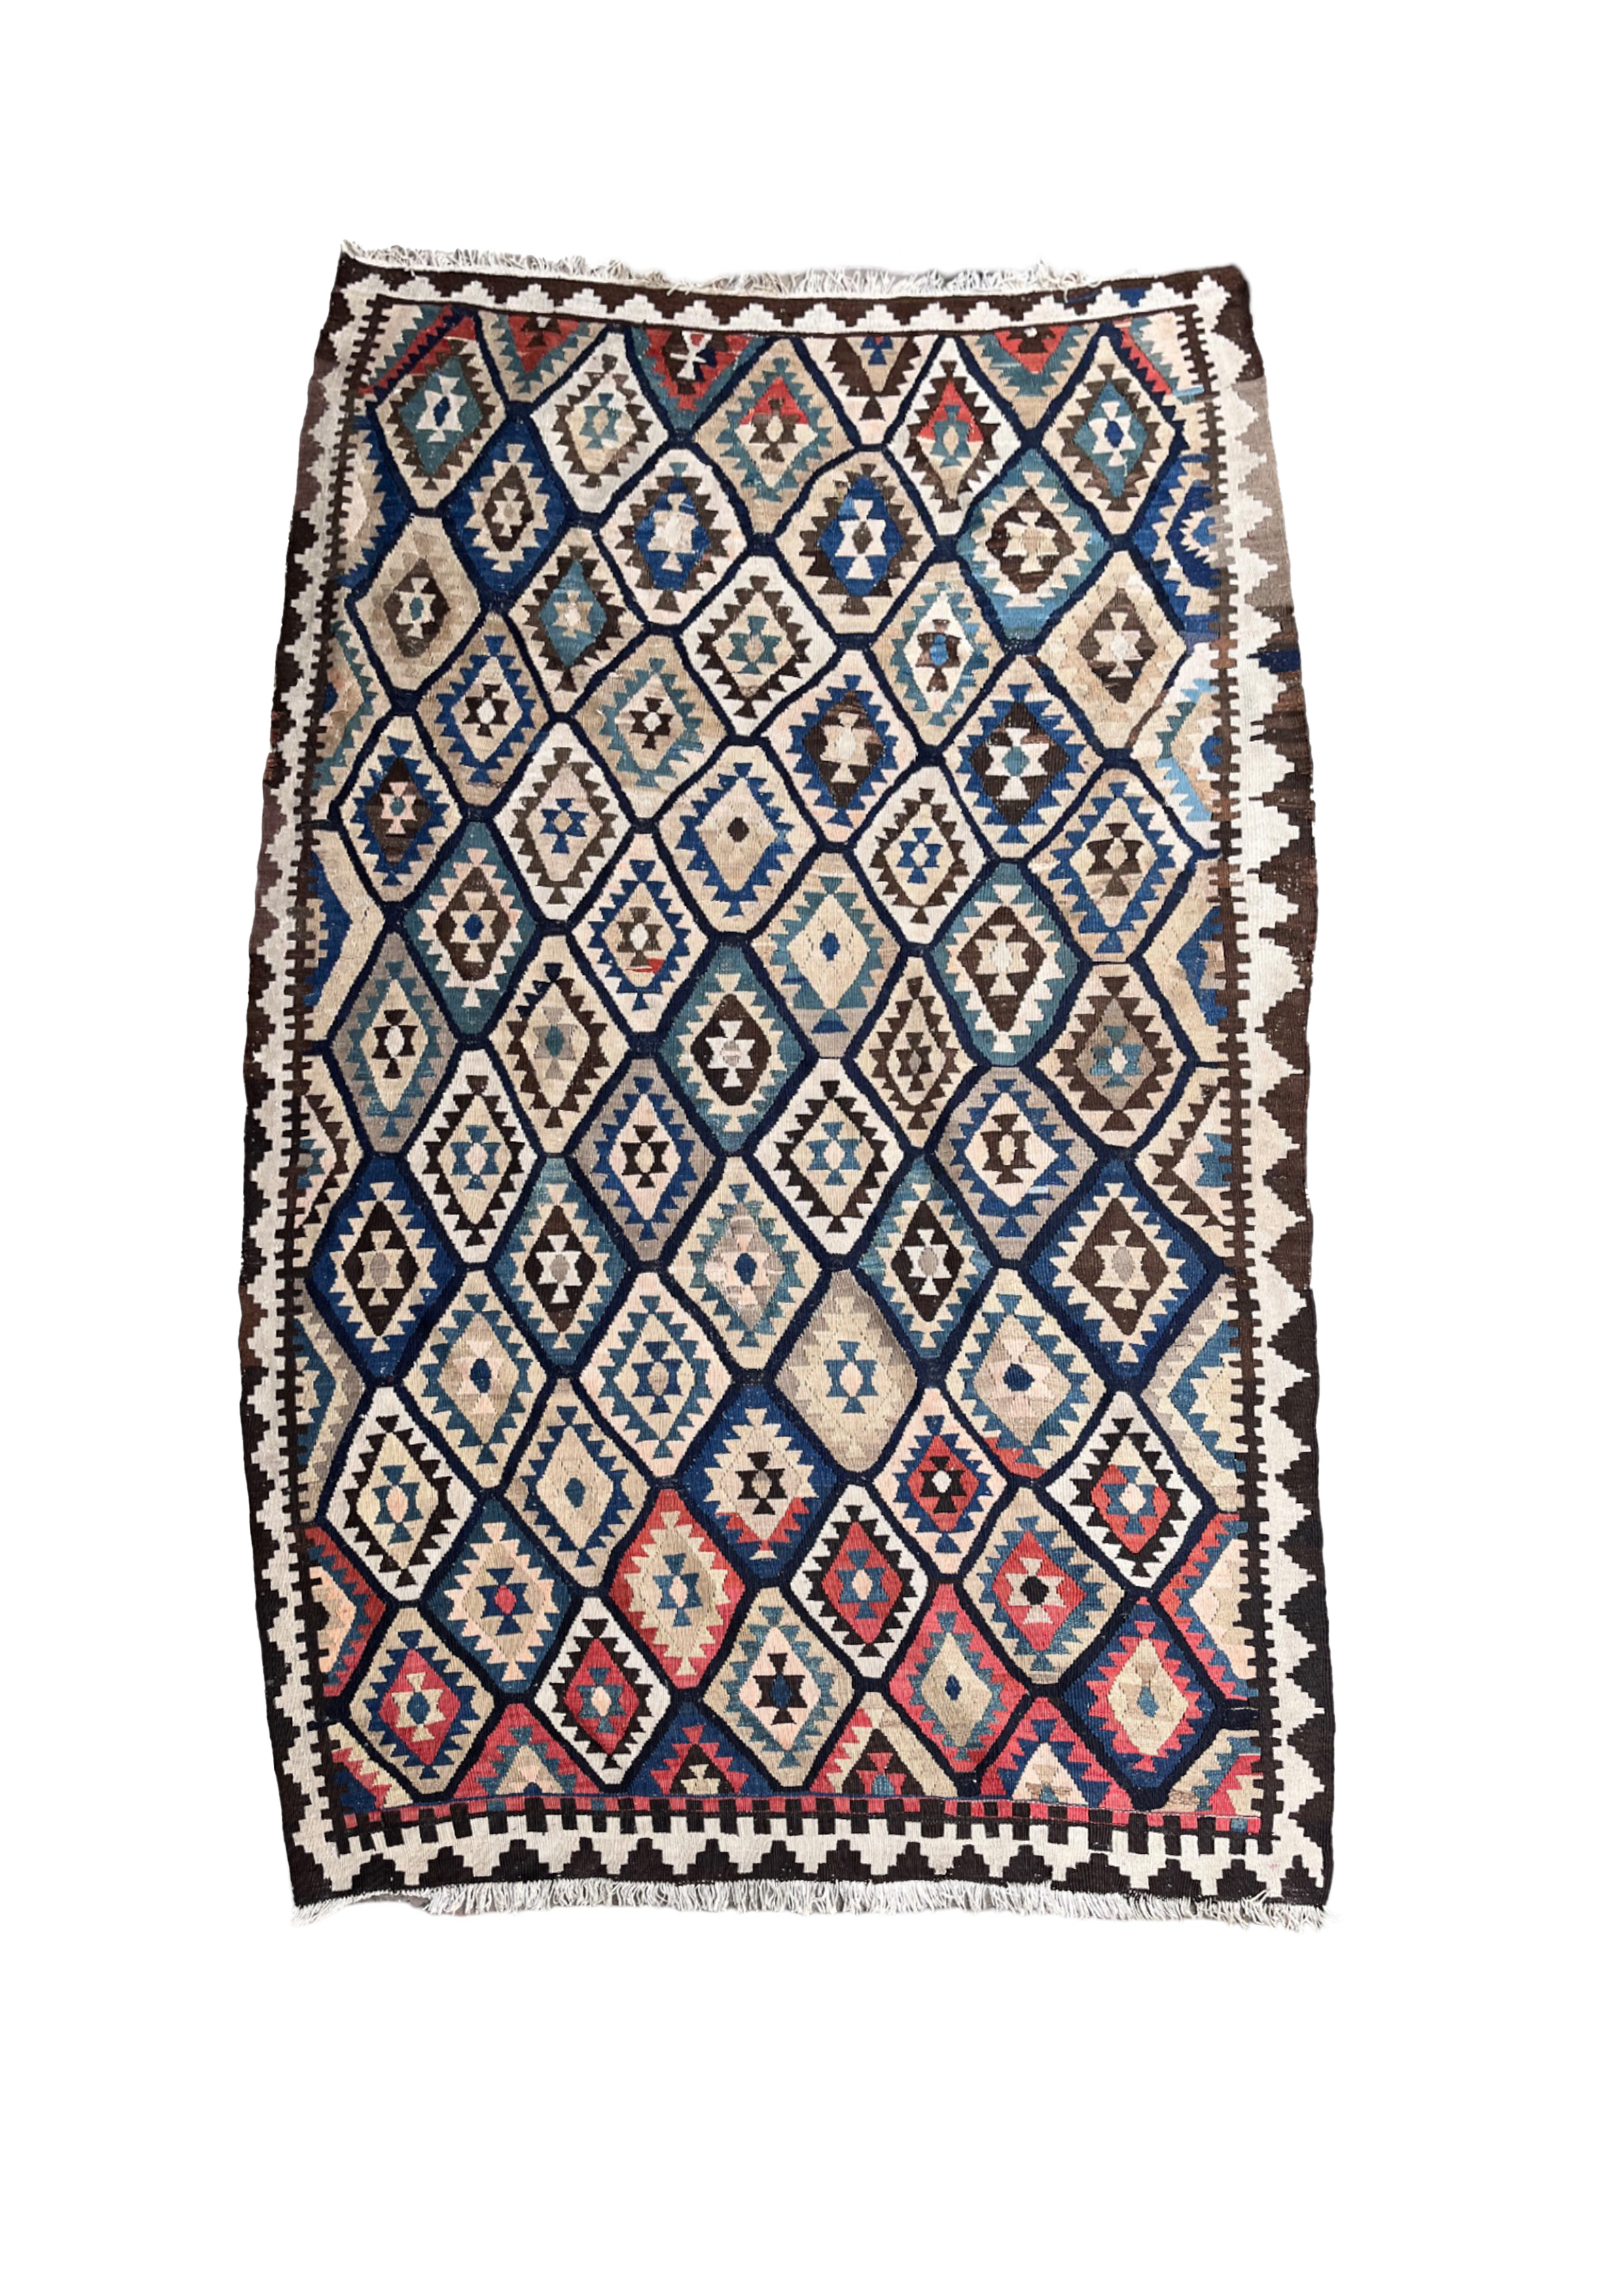 20th century, a Kilim rug